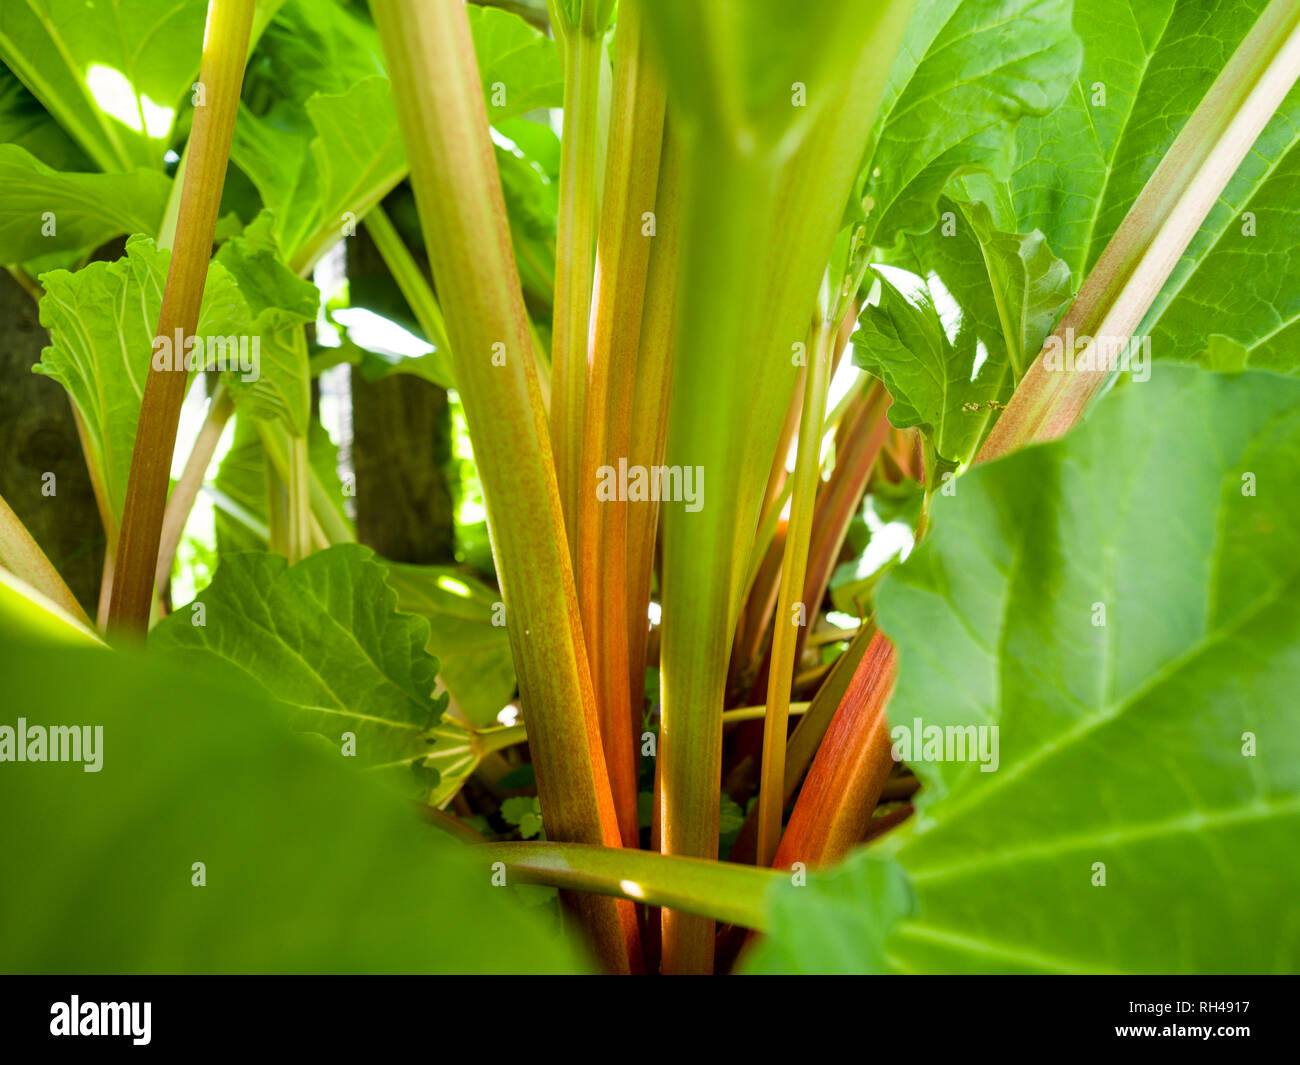 Rhabarber: Bestände von grünen und roten Rhabarber durch ihre große grüne Blätter eingerahmt. Stockfoto